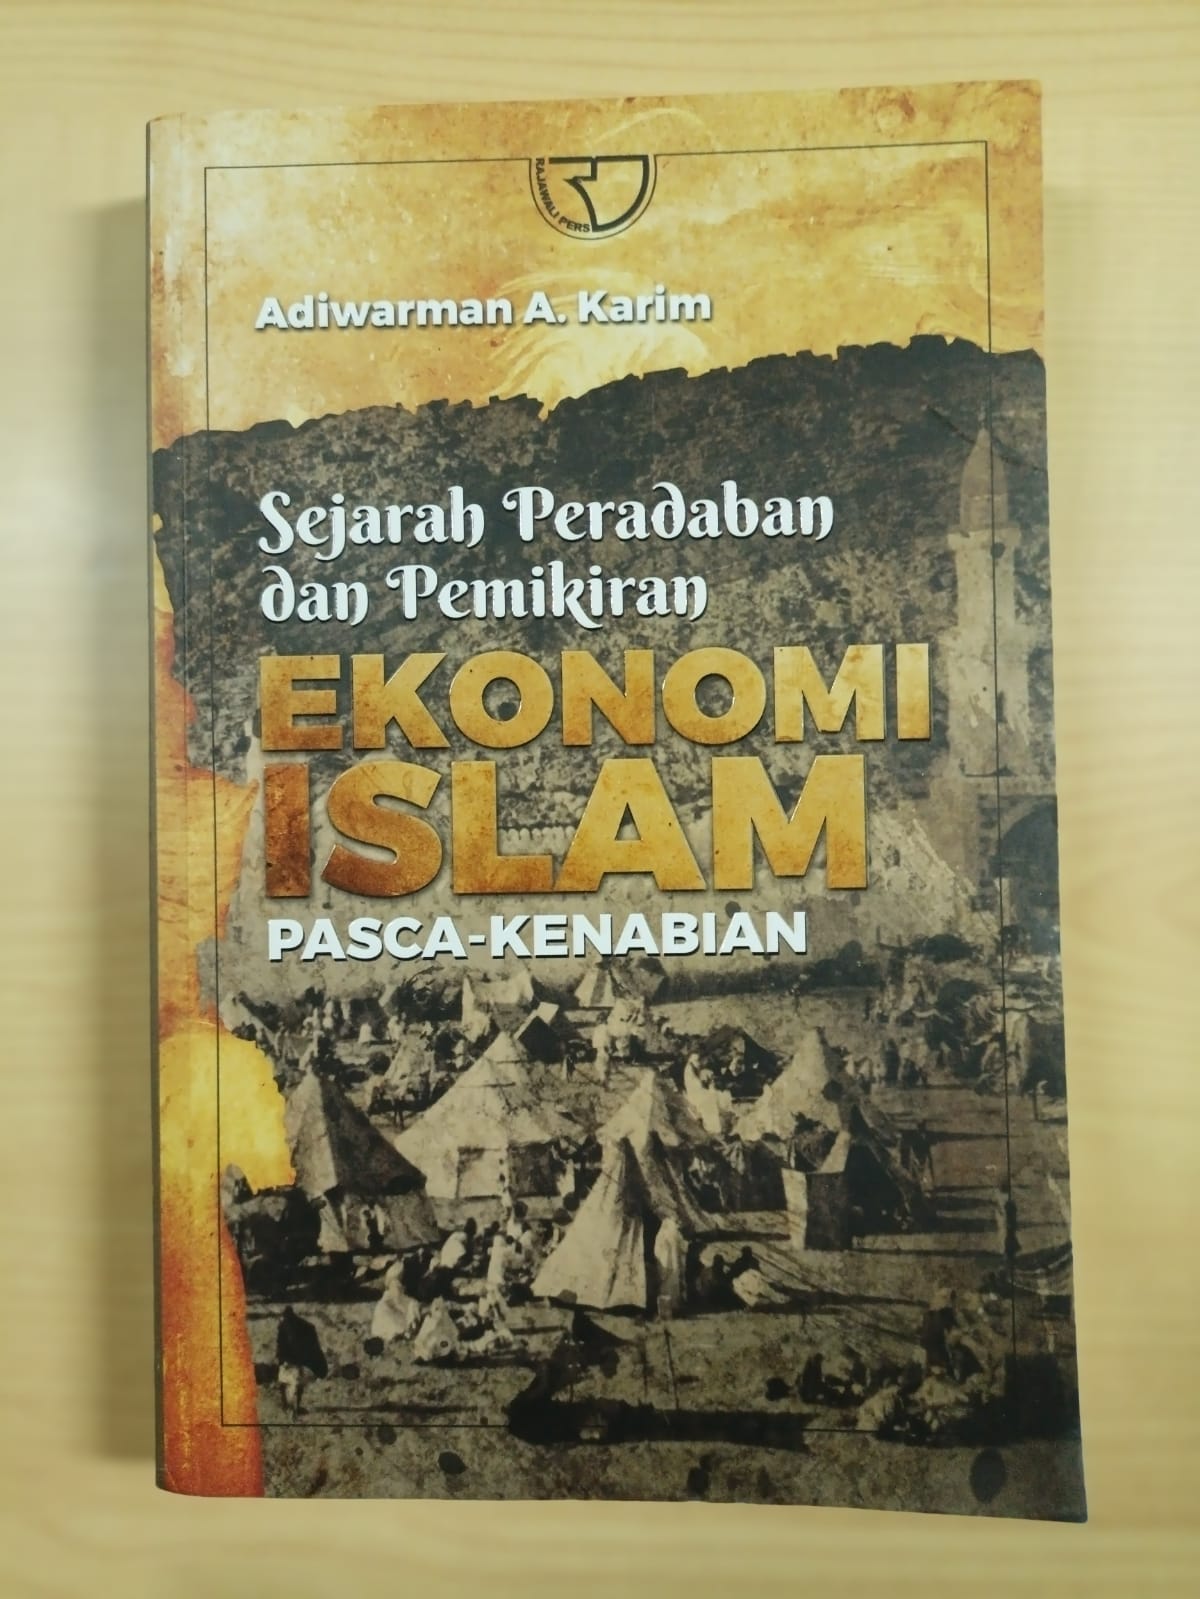 Sejarah peradaban dan pemikiran ekonomi islam pasca-kenabian